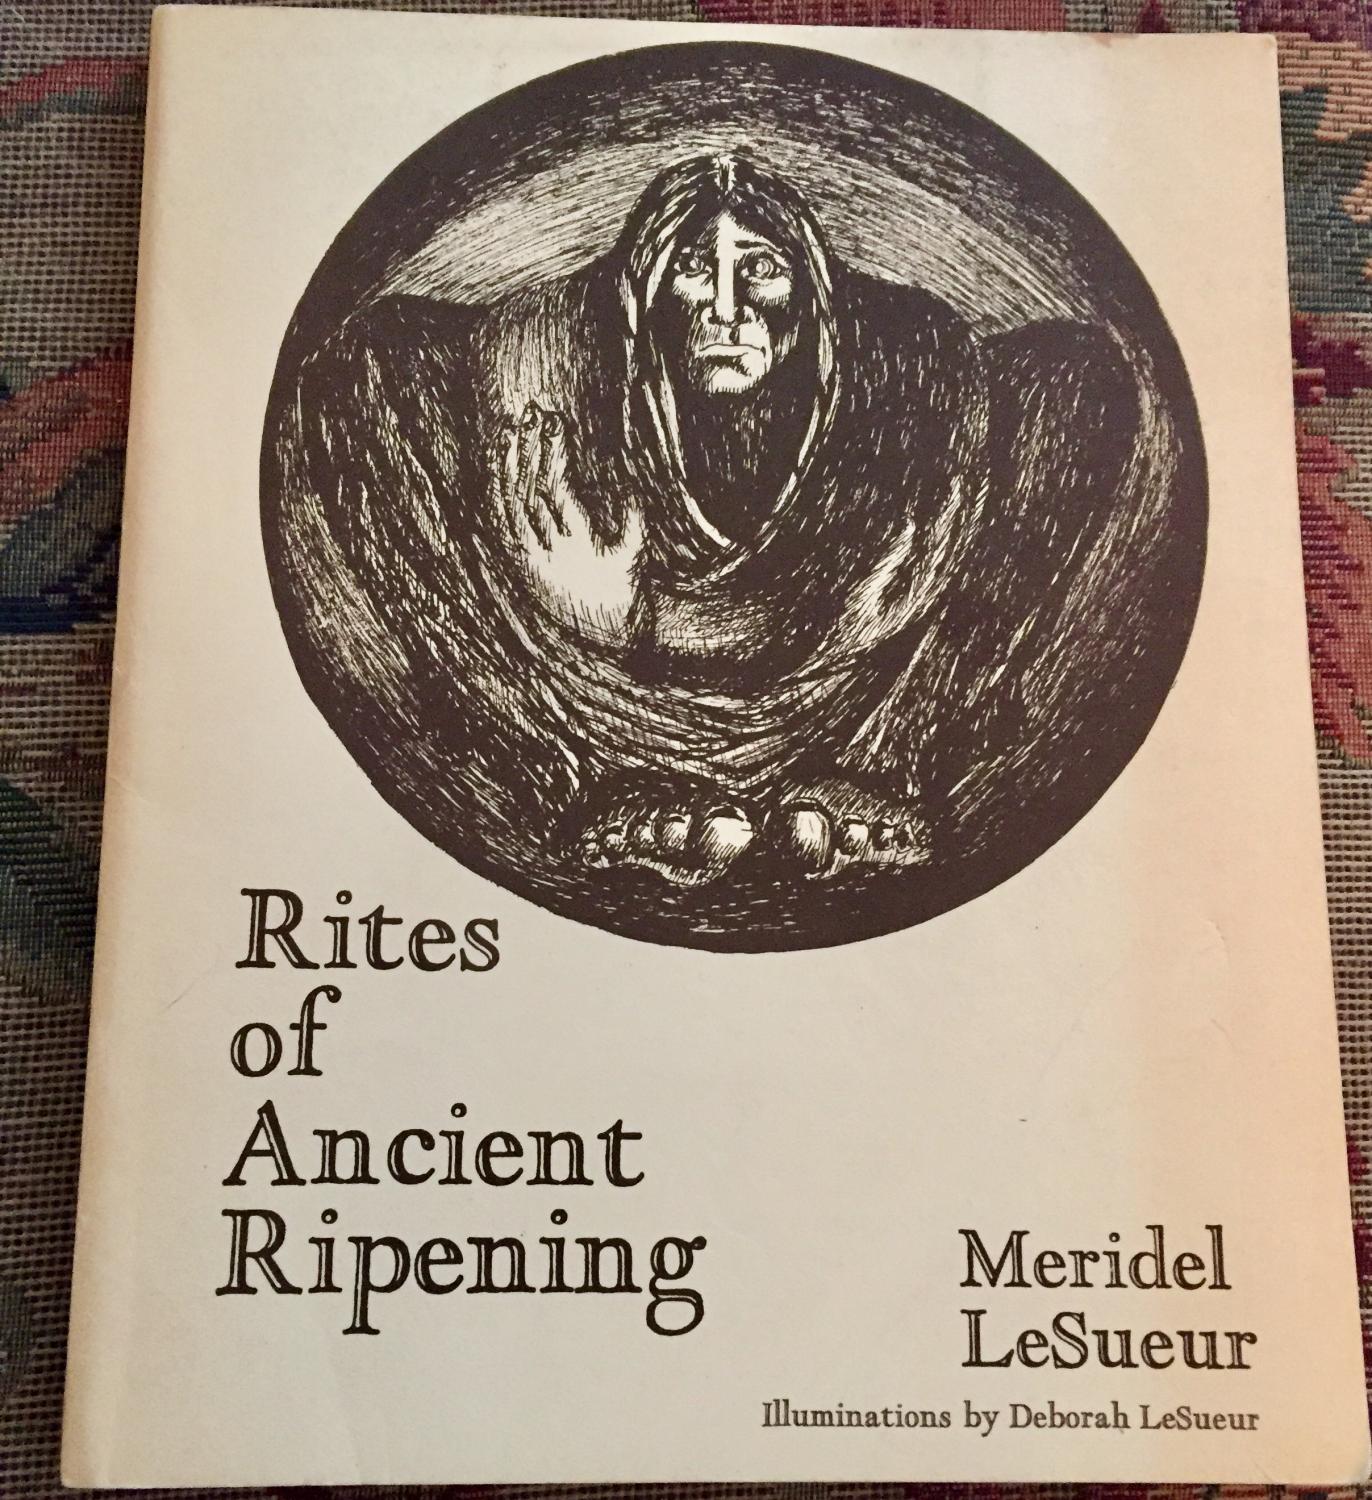 Rites of Ancient Ripening - LeSueur, Meridel